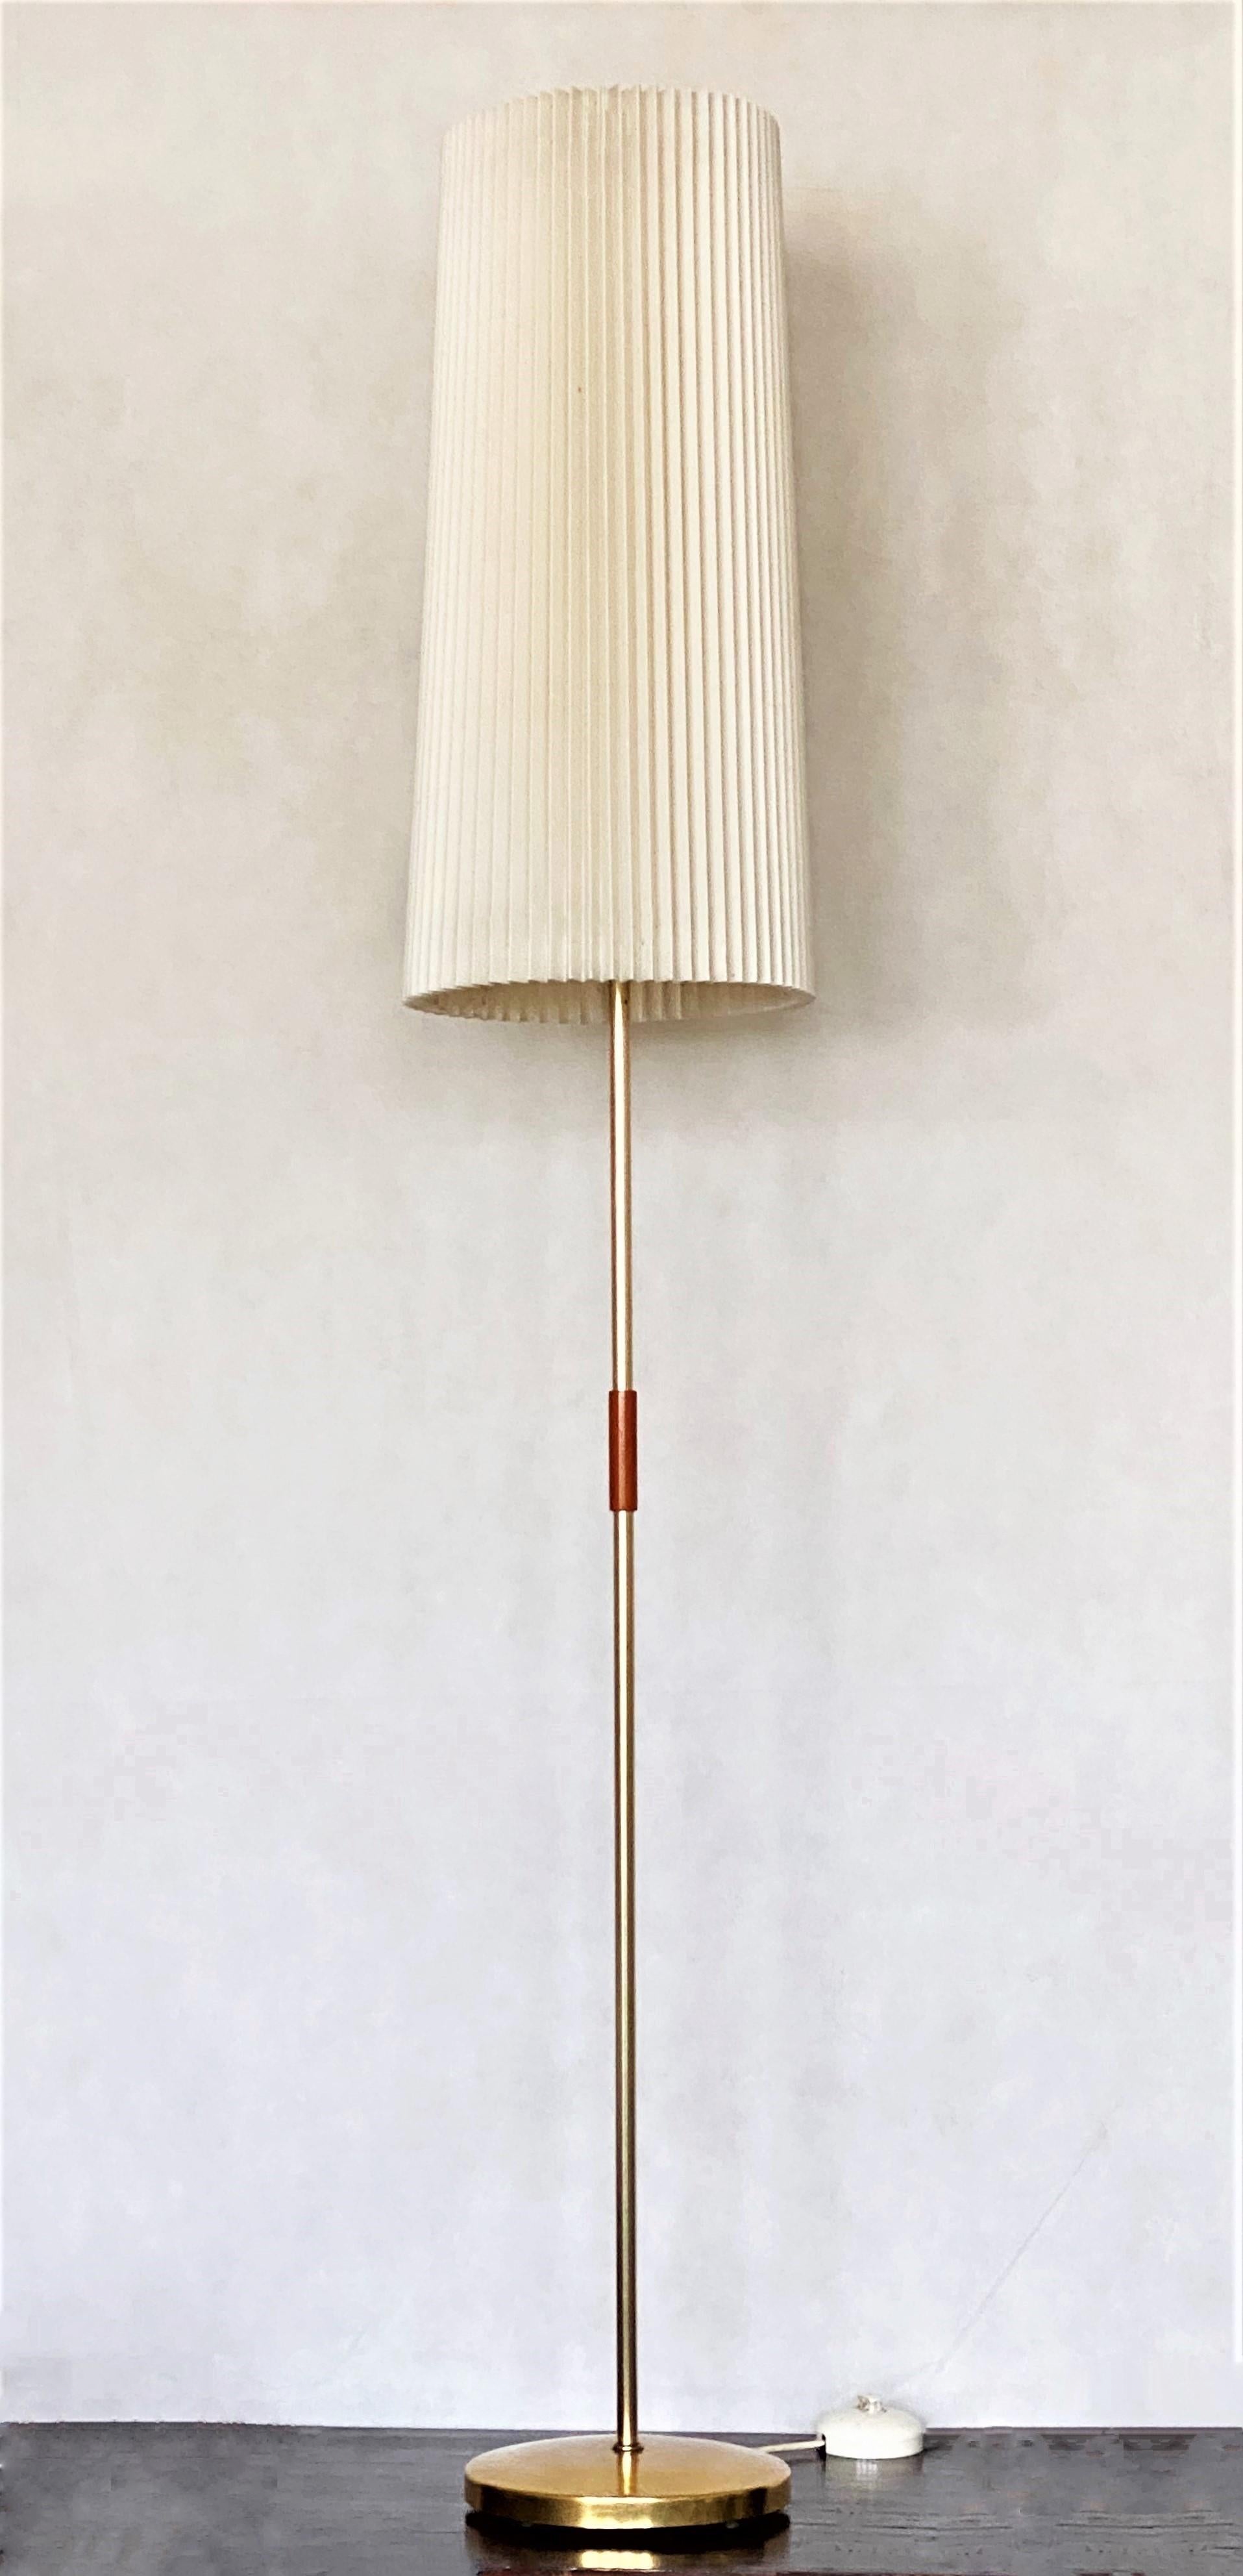 Un très élégant lampadaire vintage en laiton, Italie, 1955-1959. Modèle spécial avec un grand abat-jour plissé en plastique qui procure une lumière chaude et agréable. L'abat-jour est d'origine et est en très bon état. Il peut accueillir une ampoule